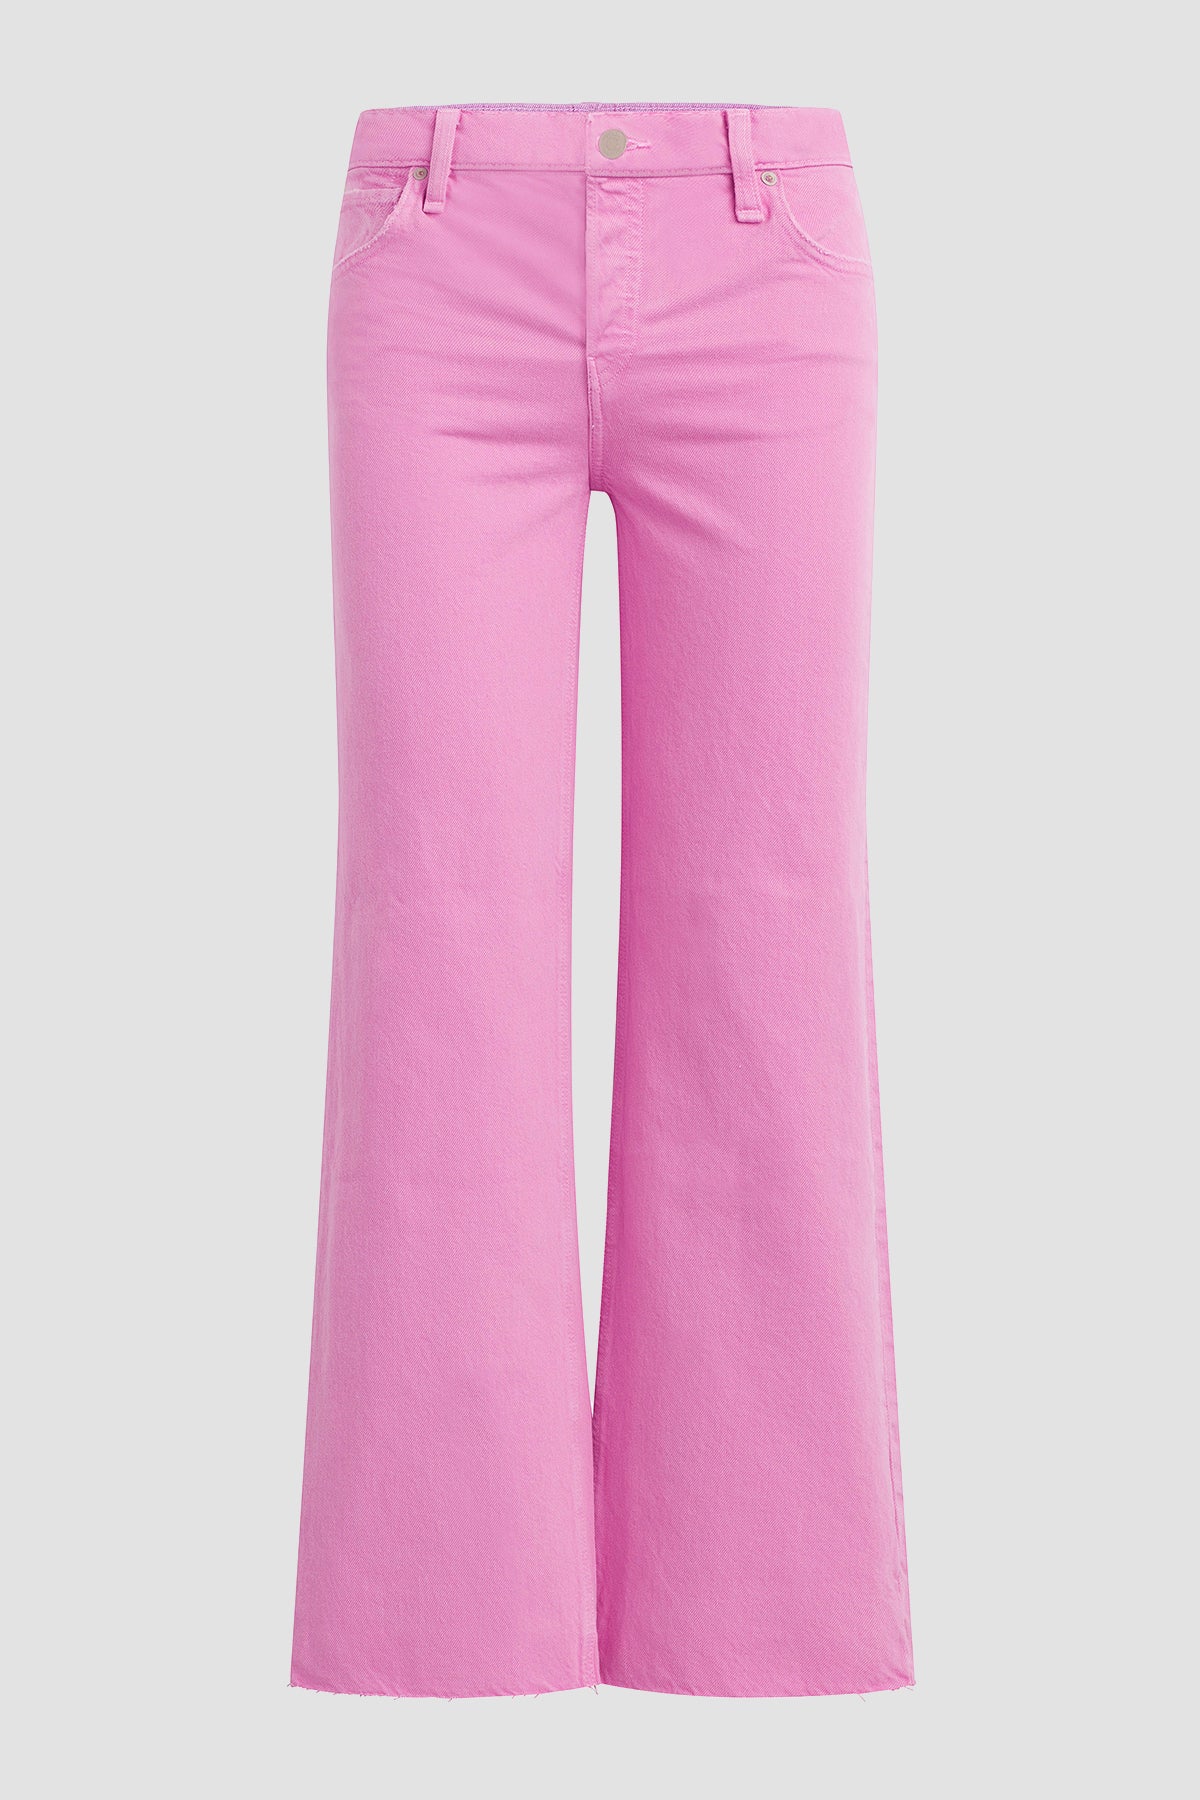 Escada Framboise Pink Stretch Denim High Rise Straight Leg Tessa Jeans M  Escada